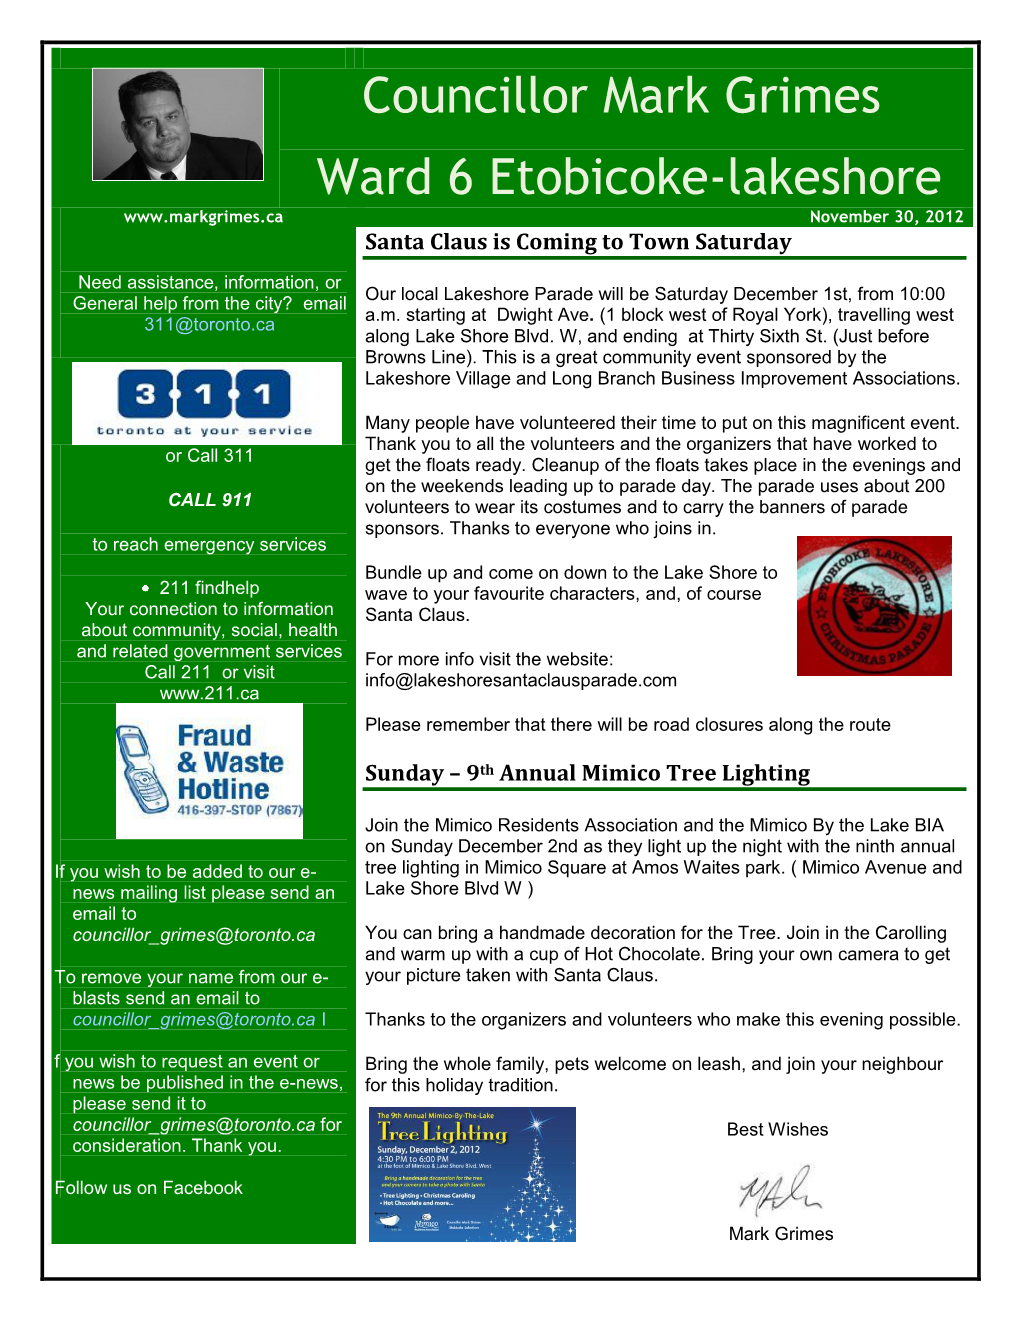 Councillor Mark Grimes Ward 6 Etobicoke-Lakeshore November 30, 2012 Santa Claus Is Coming to Town Saturday